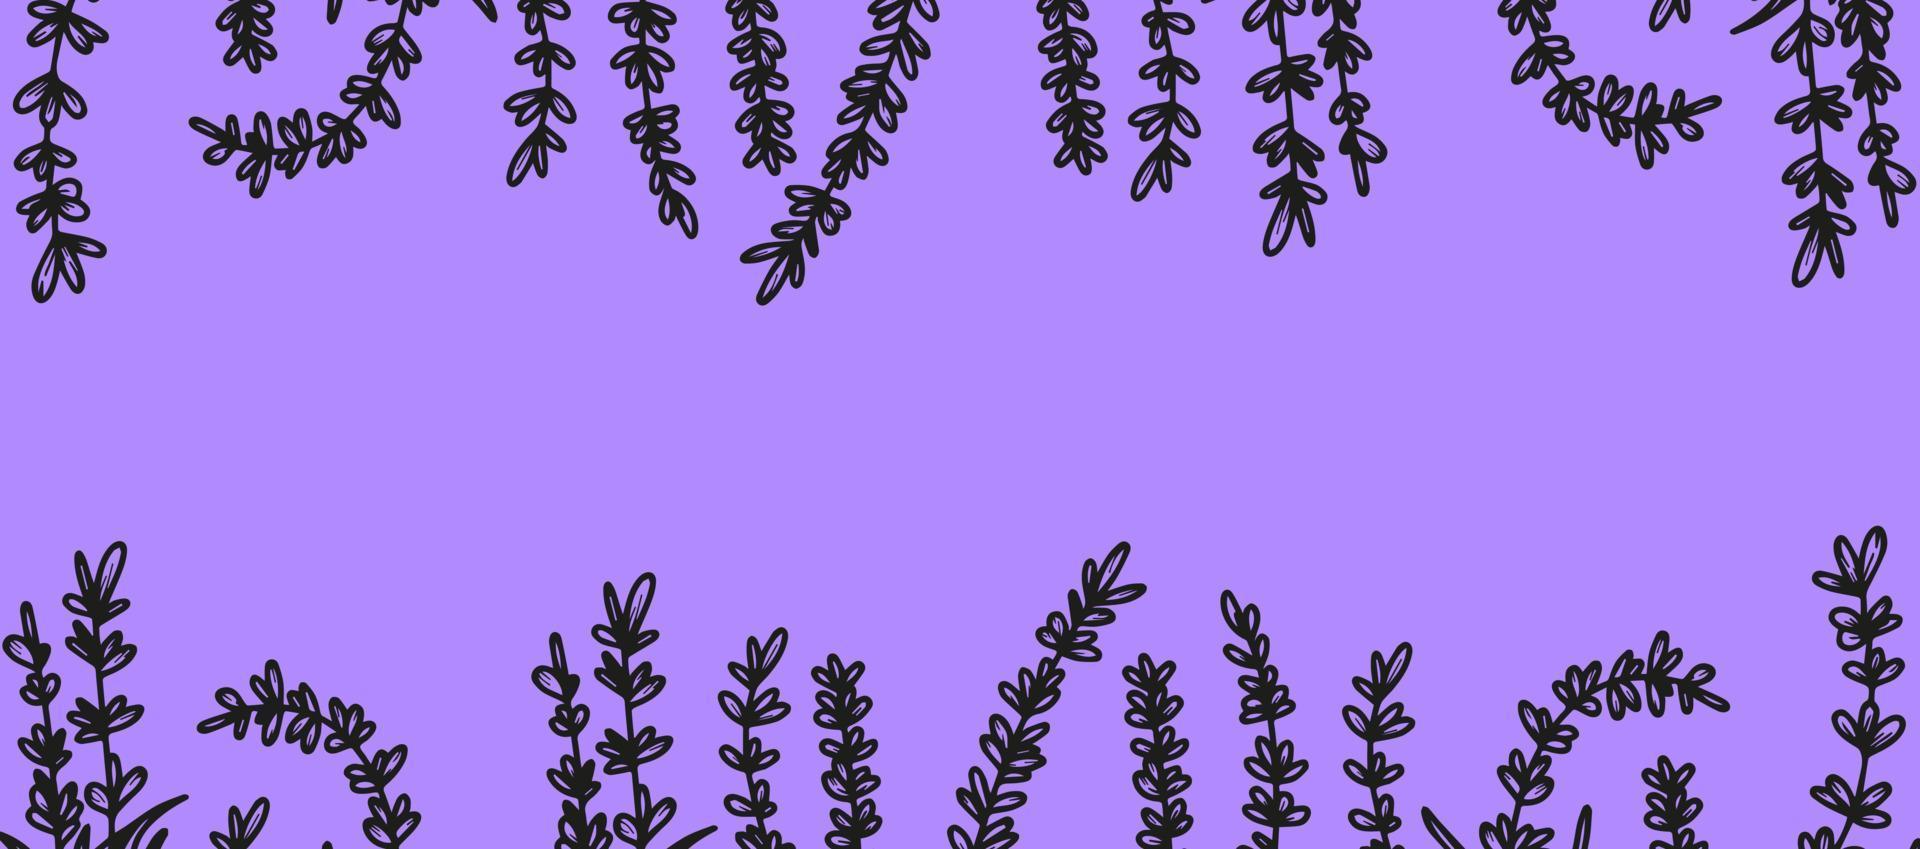 schöner Hintergrund mit handgezeichneten Lavendelblüten, Heilkräutern. um ein Banner, Poster, Postkarten zu erstellen. Vektor-Illustration lila Hintergrund. das Konzept der französischen Provence, ein botanischer Trend. vektor